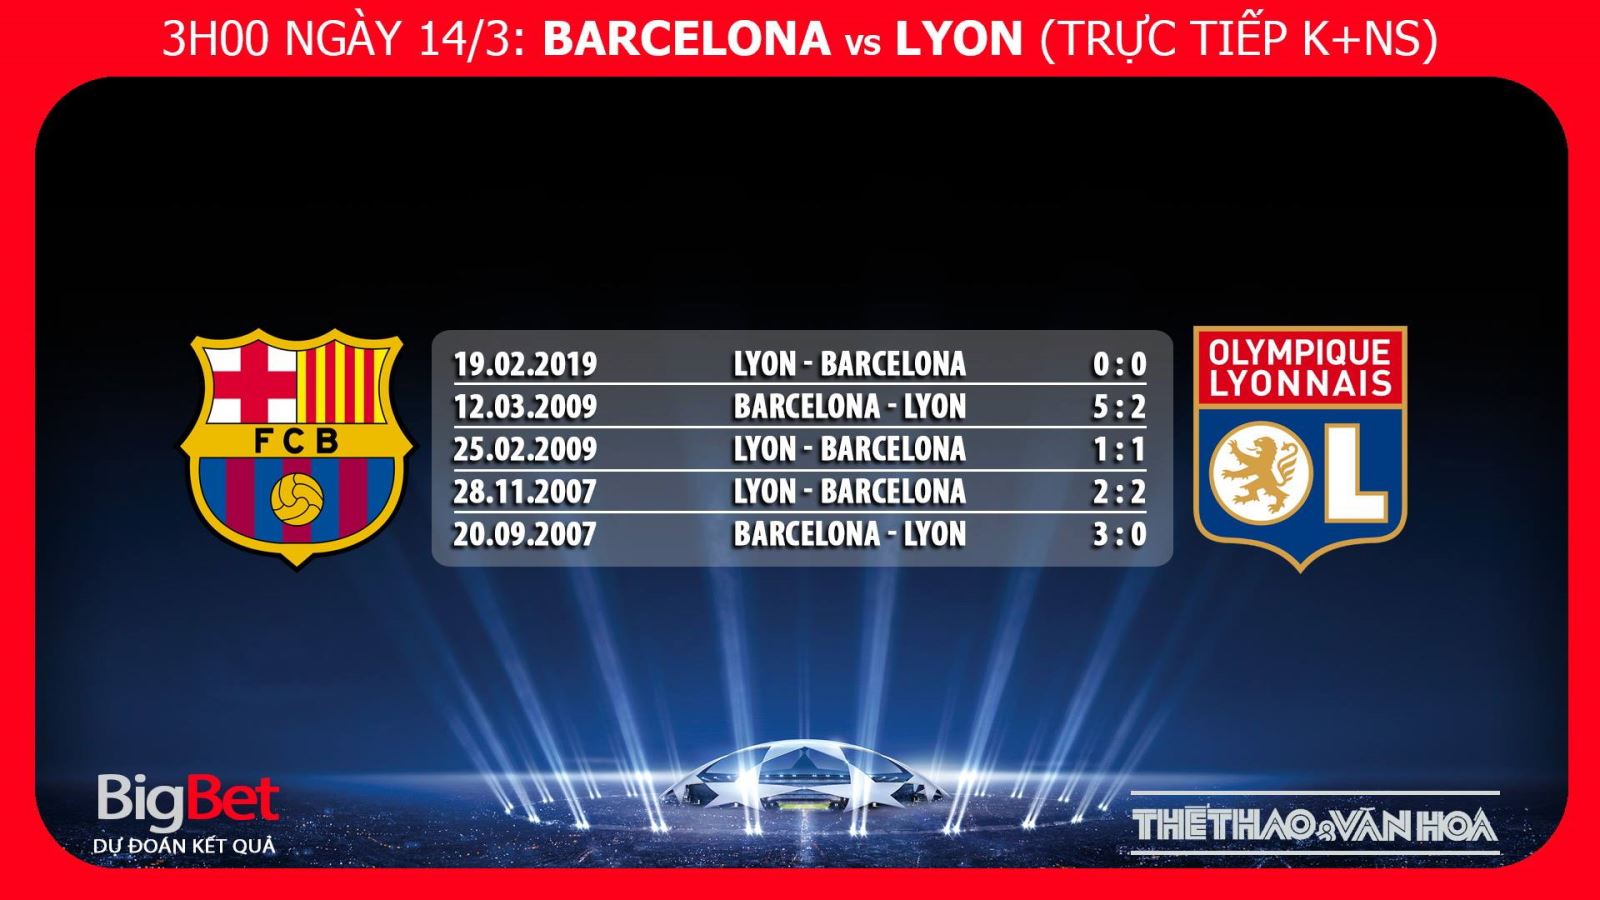 Barca, Barcelona vs Lyon, trực tiếp bóng đá, Barca vs Lyon, truc tiep bong da, nhận định bóng đá Barcelona vs Lyon, kèo Barca vs Lyon, kèo bóng đá, nhận định Barcelona vs Lyon, dự đoán bóng đá